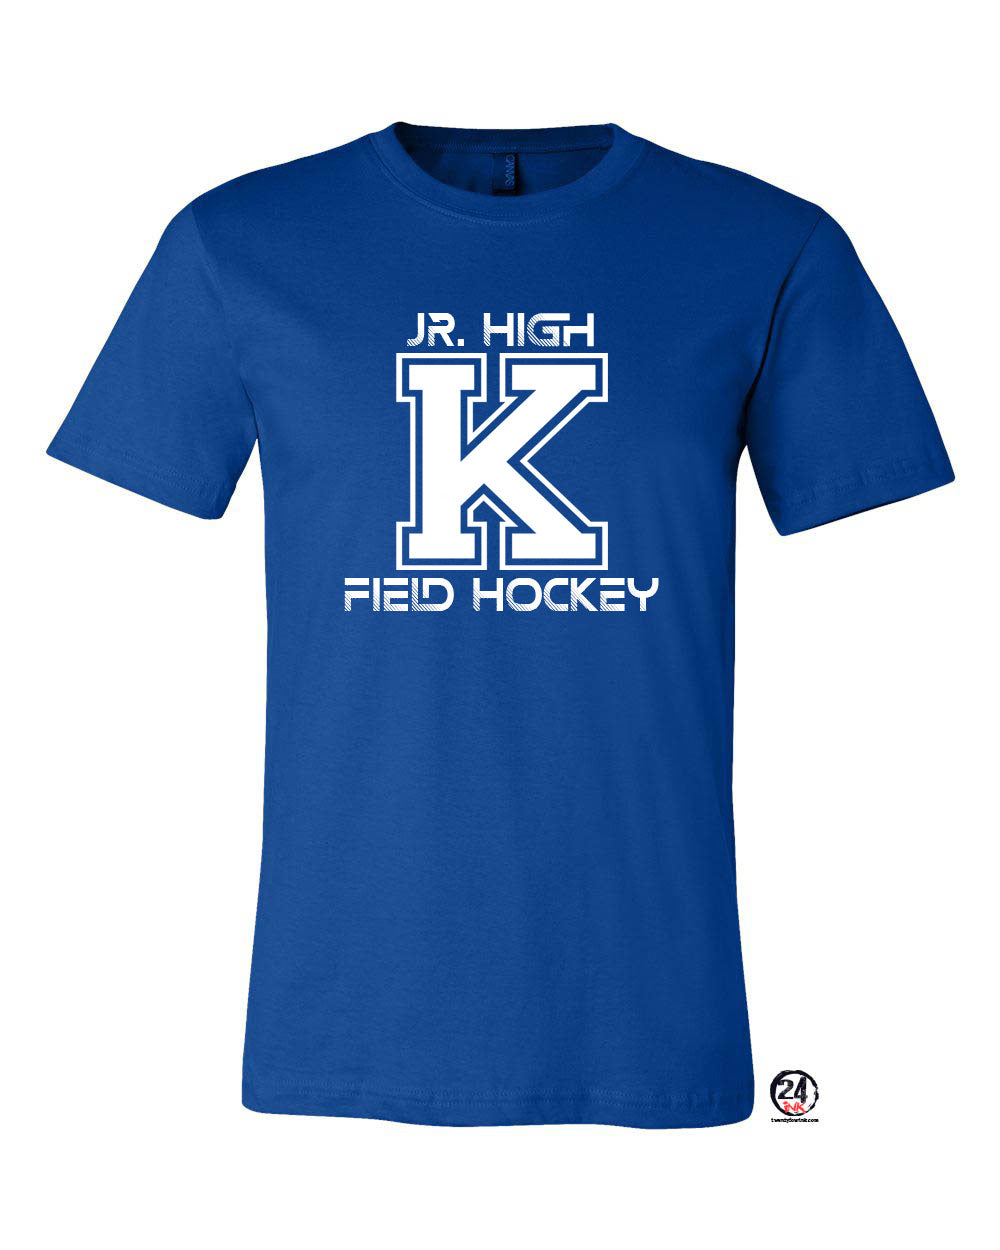 Kittatinny Jr High Field Hockey Design 4 t-Shirt